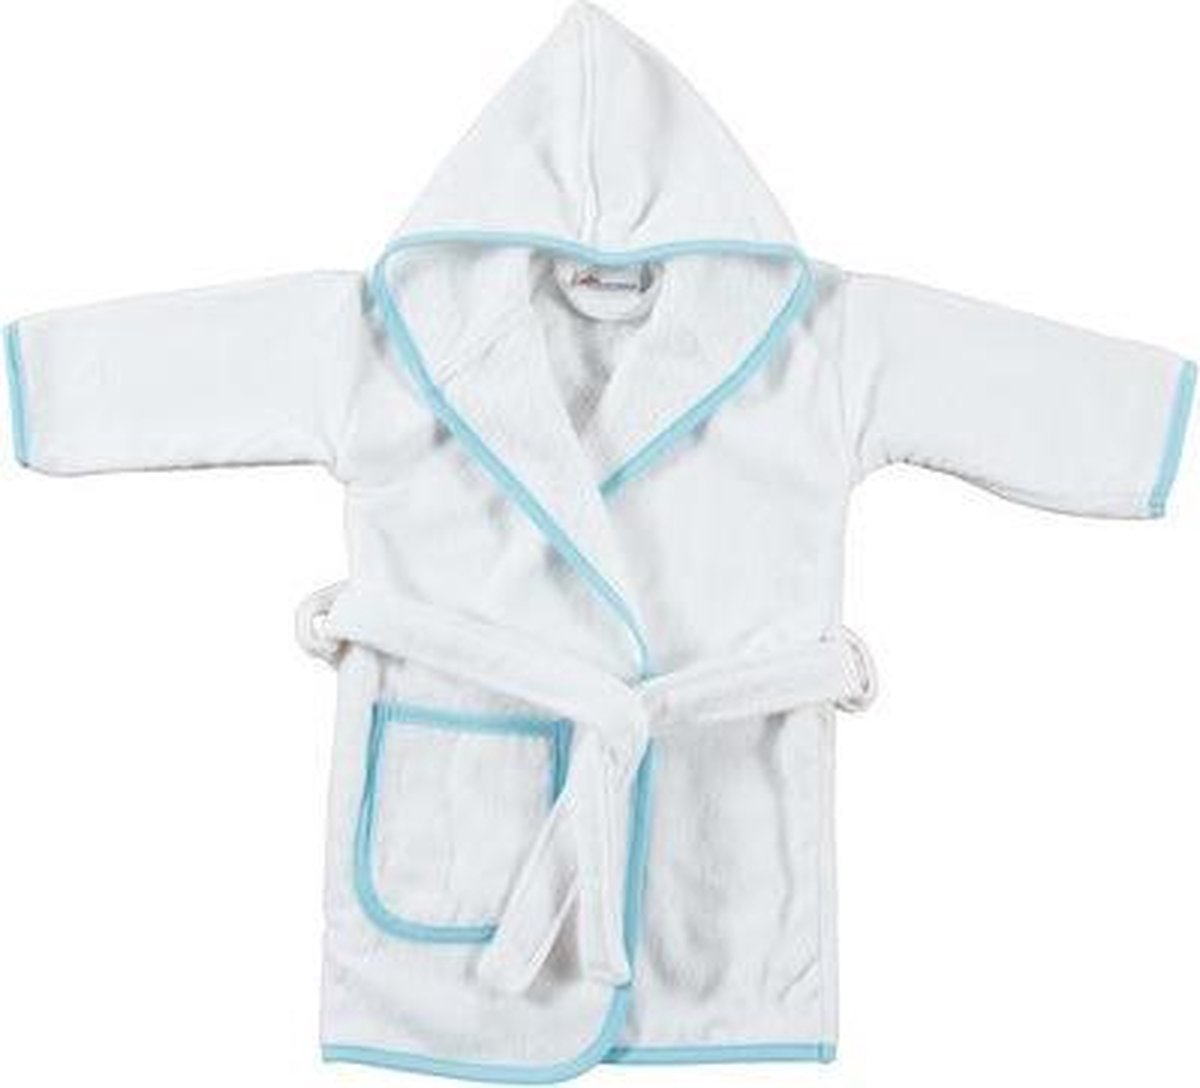 Baby badjas wit met blauw 0-6 maand